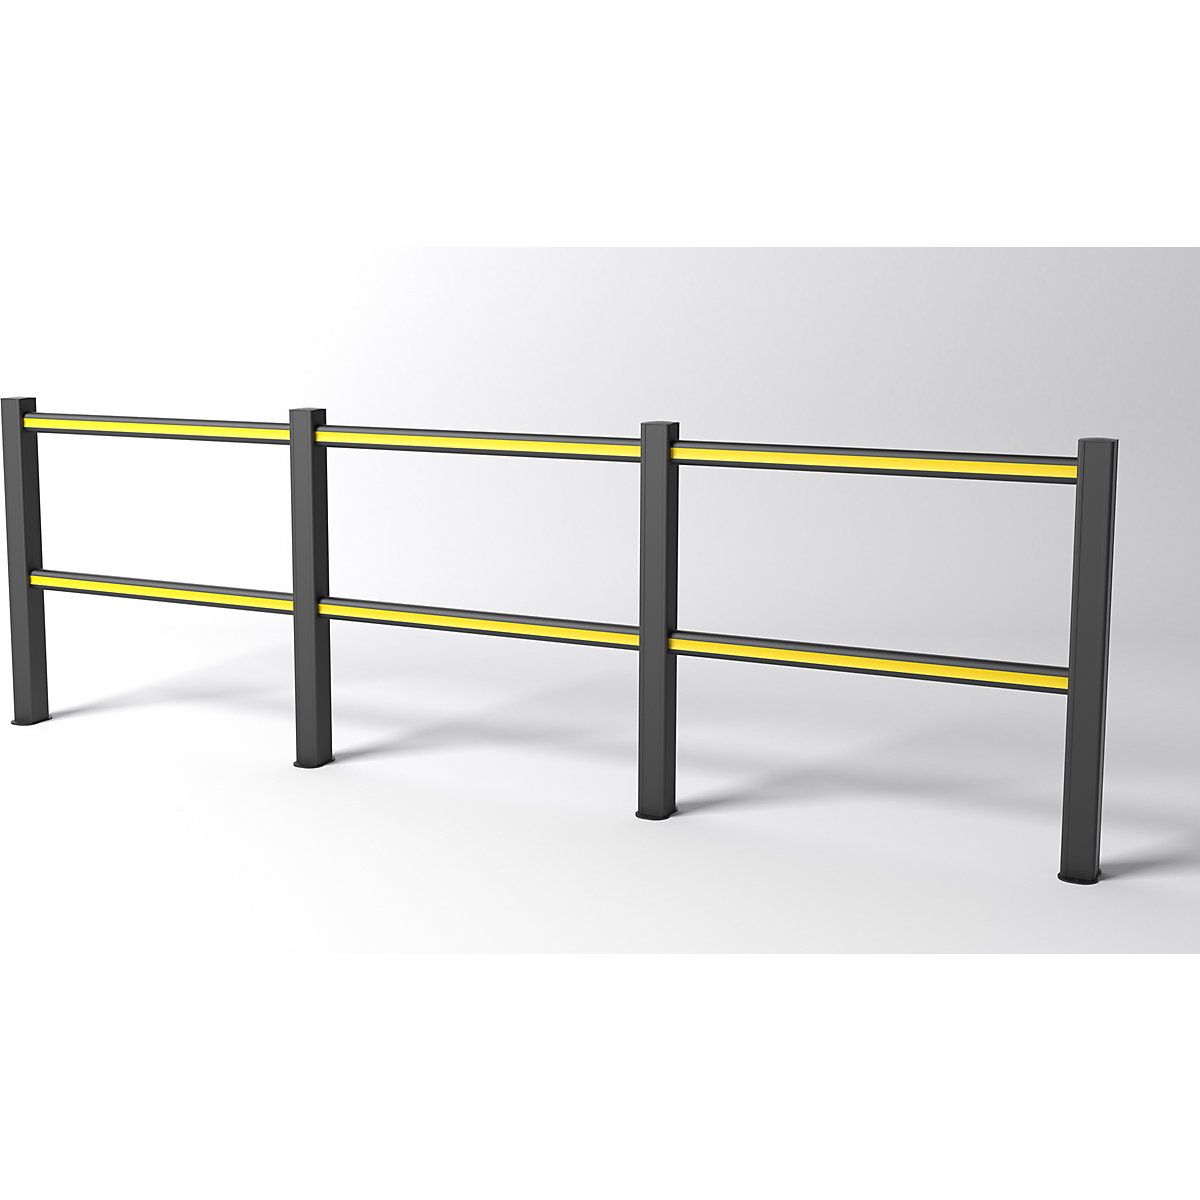 FLEX IMPACT handrail system, black posts – black/yellow struts, width 3750 mm-2